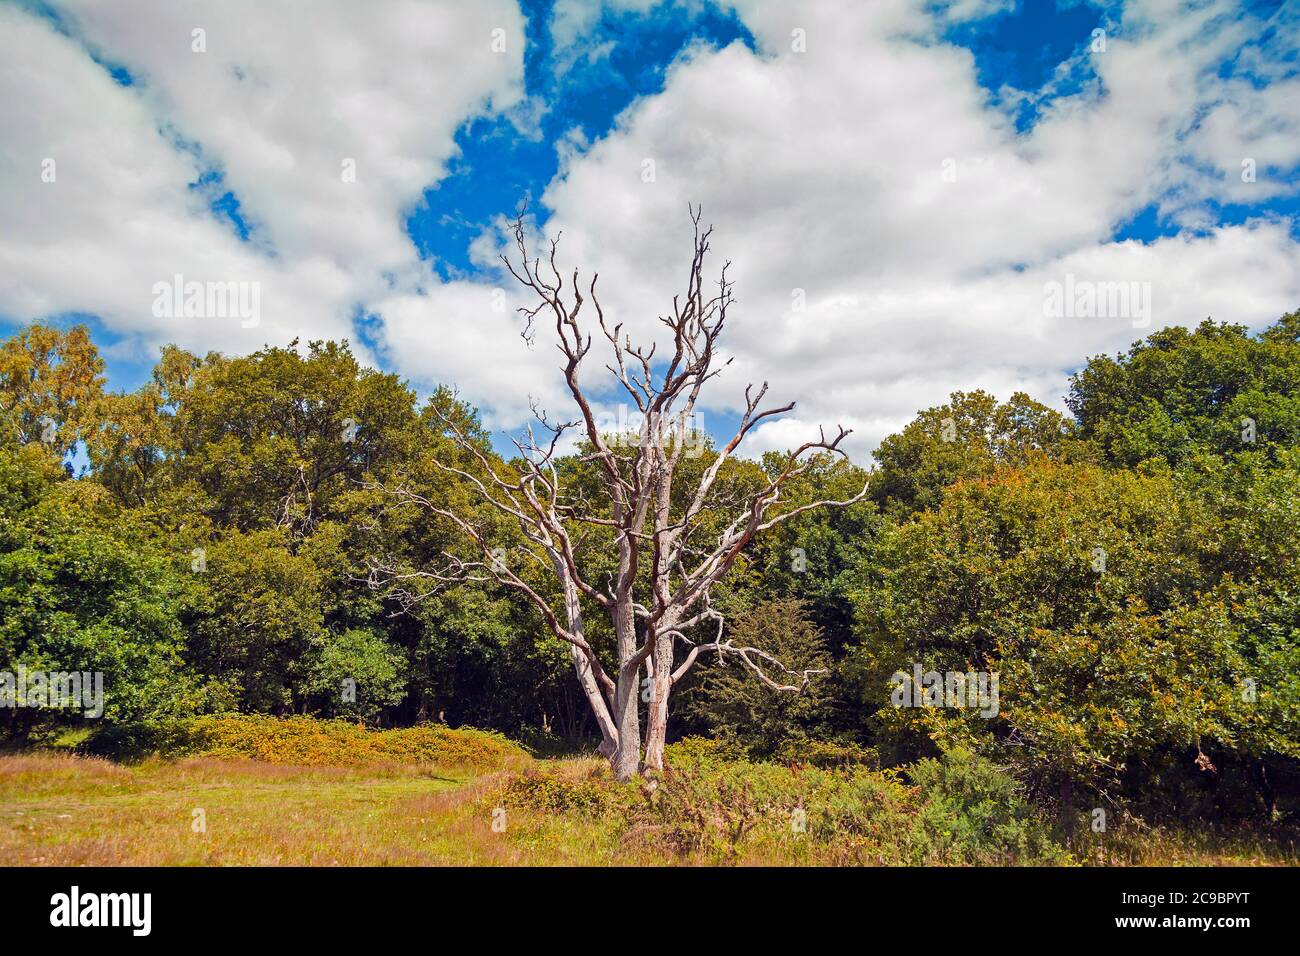 Sommerzeit, ein toter Baum, stark bleich stehend zwischen reen foilage, sonnig blauer Himmel Stockfoto